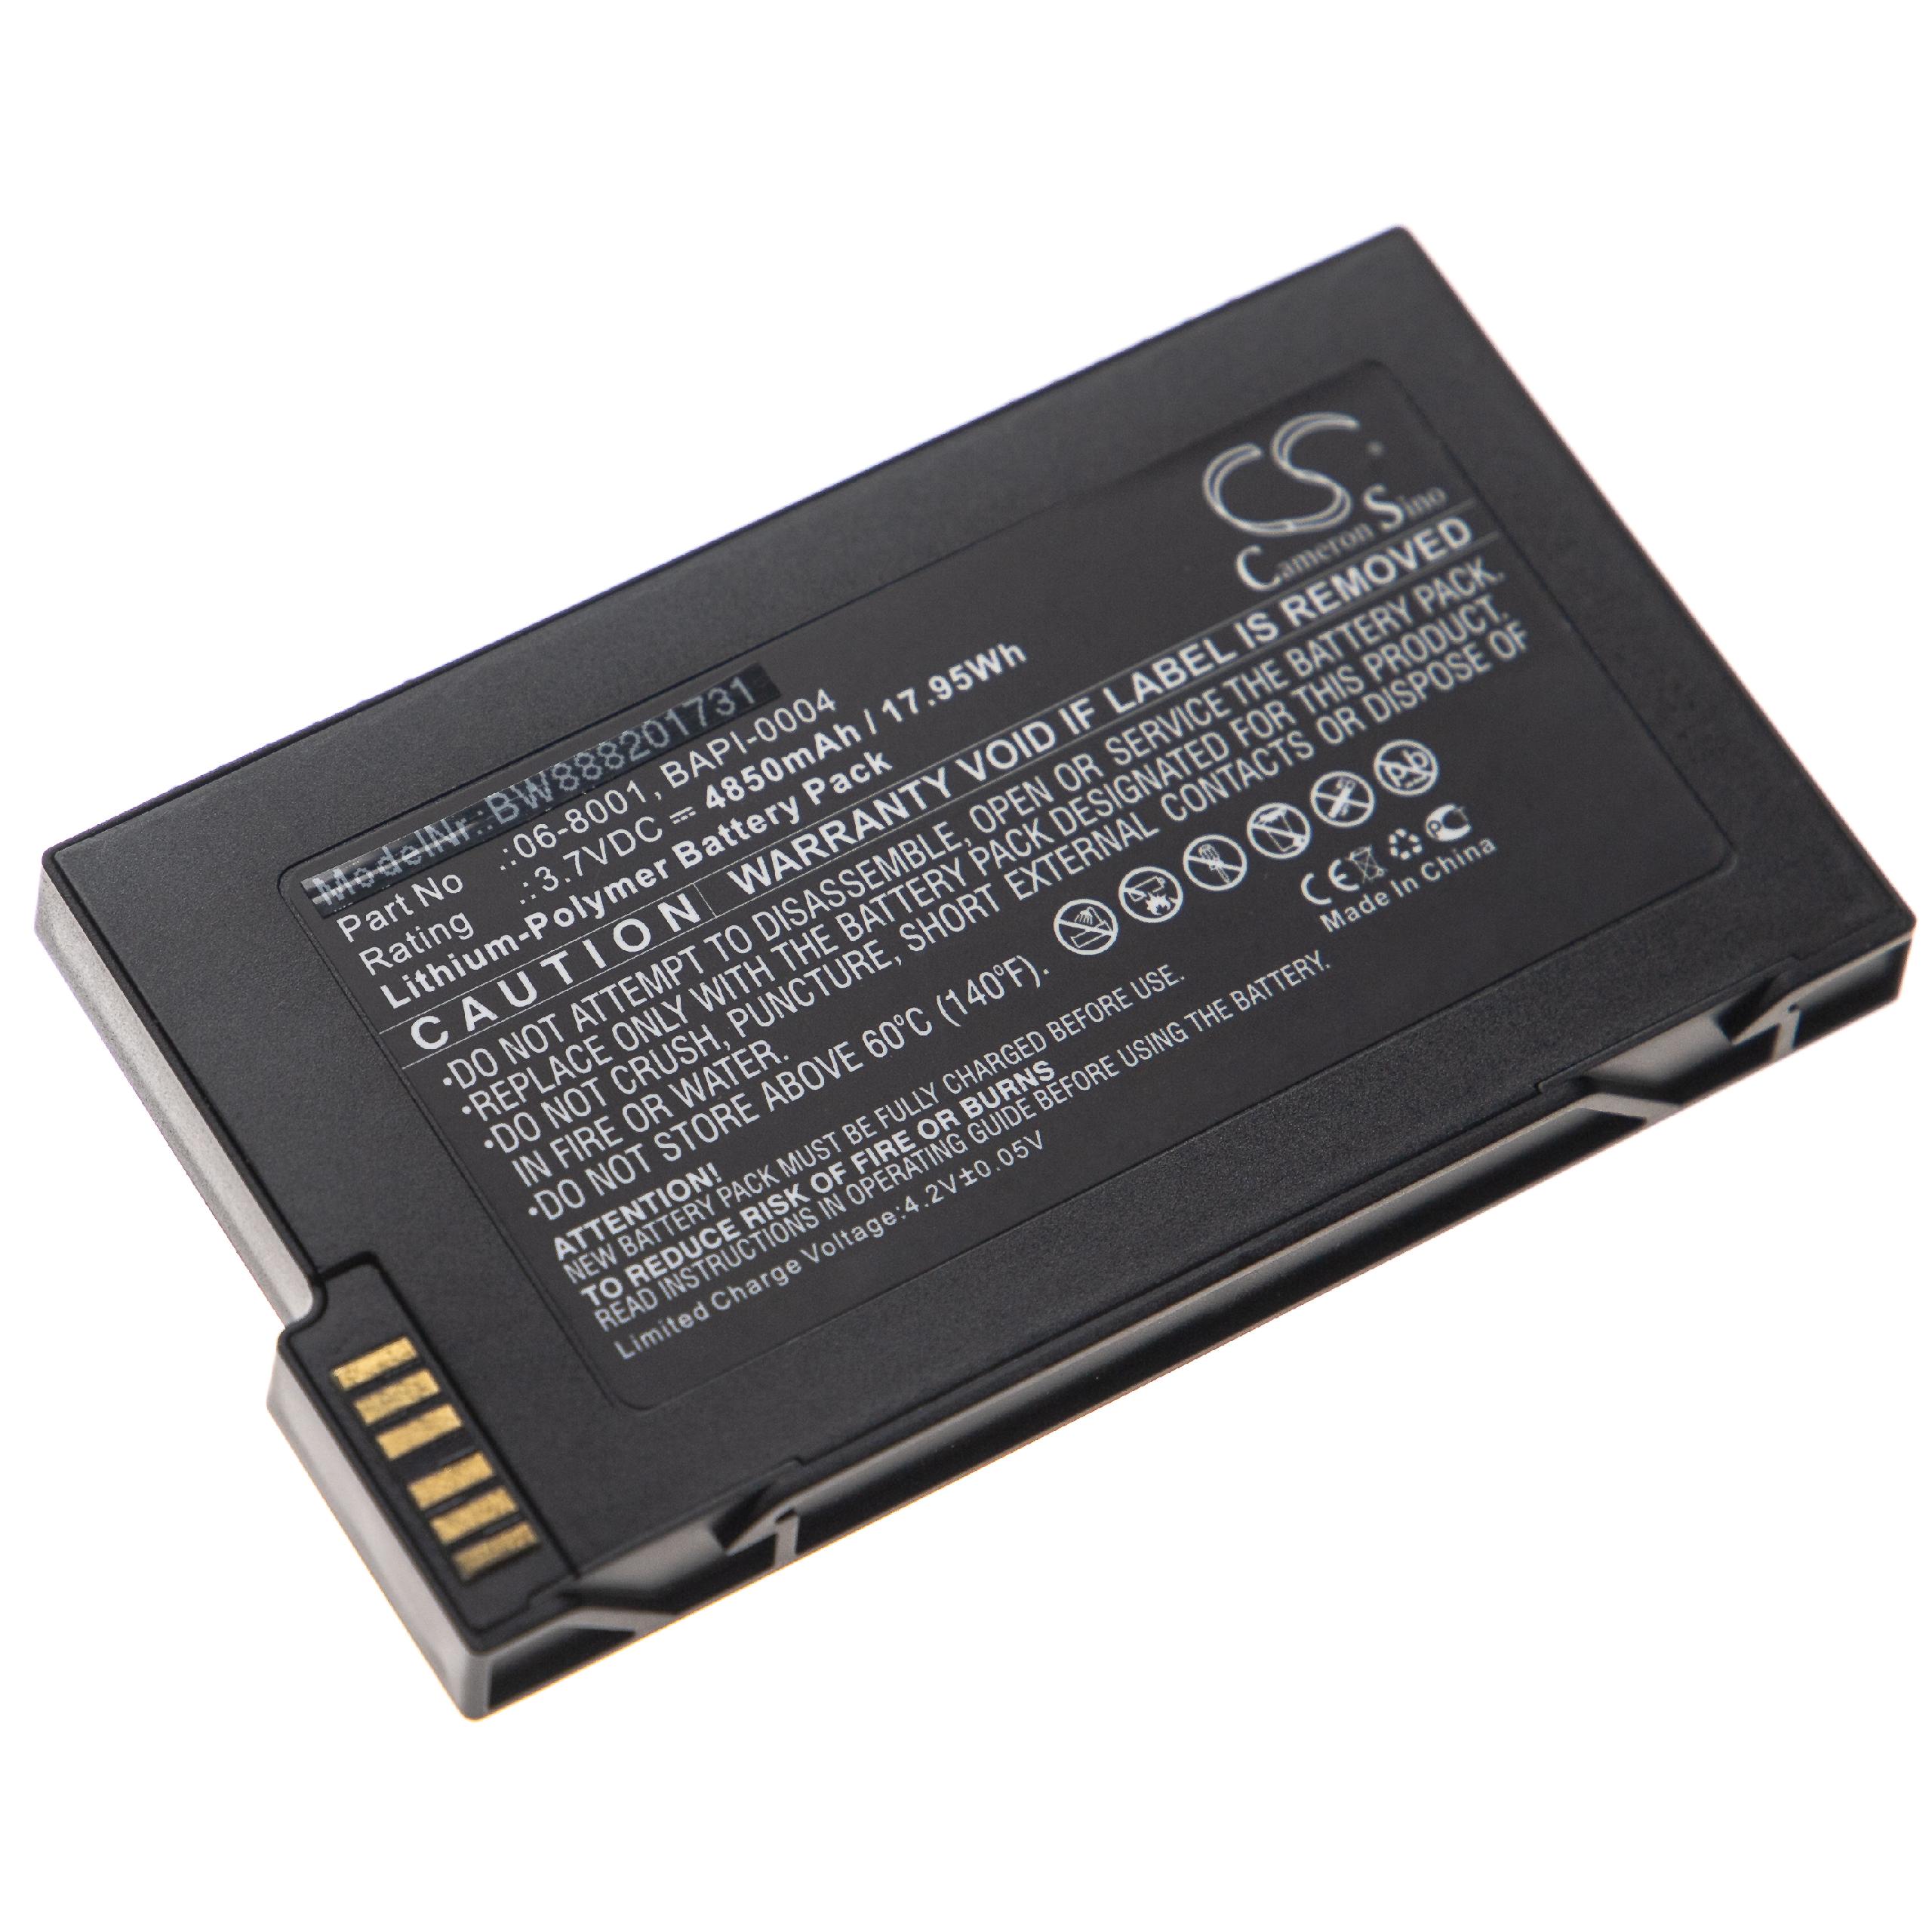 Batterie remplace HumanWare 06-8001, BAPI-0004 pour ordinateur braille - 4850mAh 3,7V Li-polymère